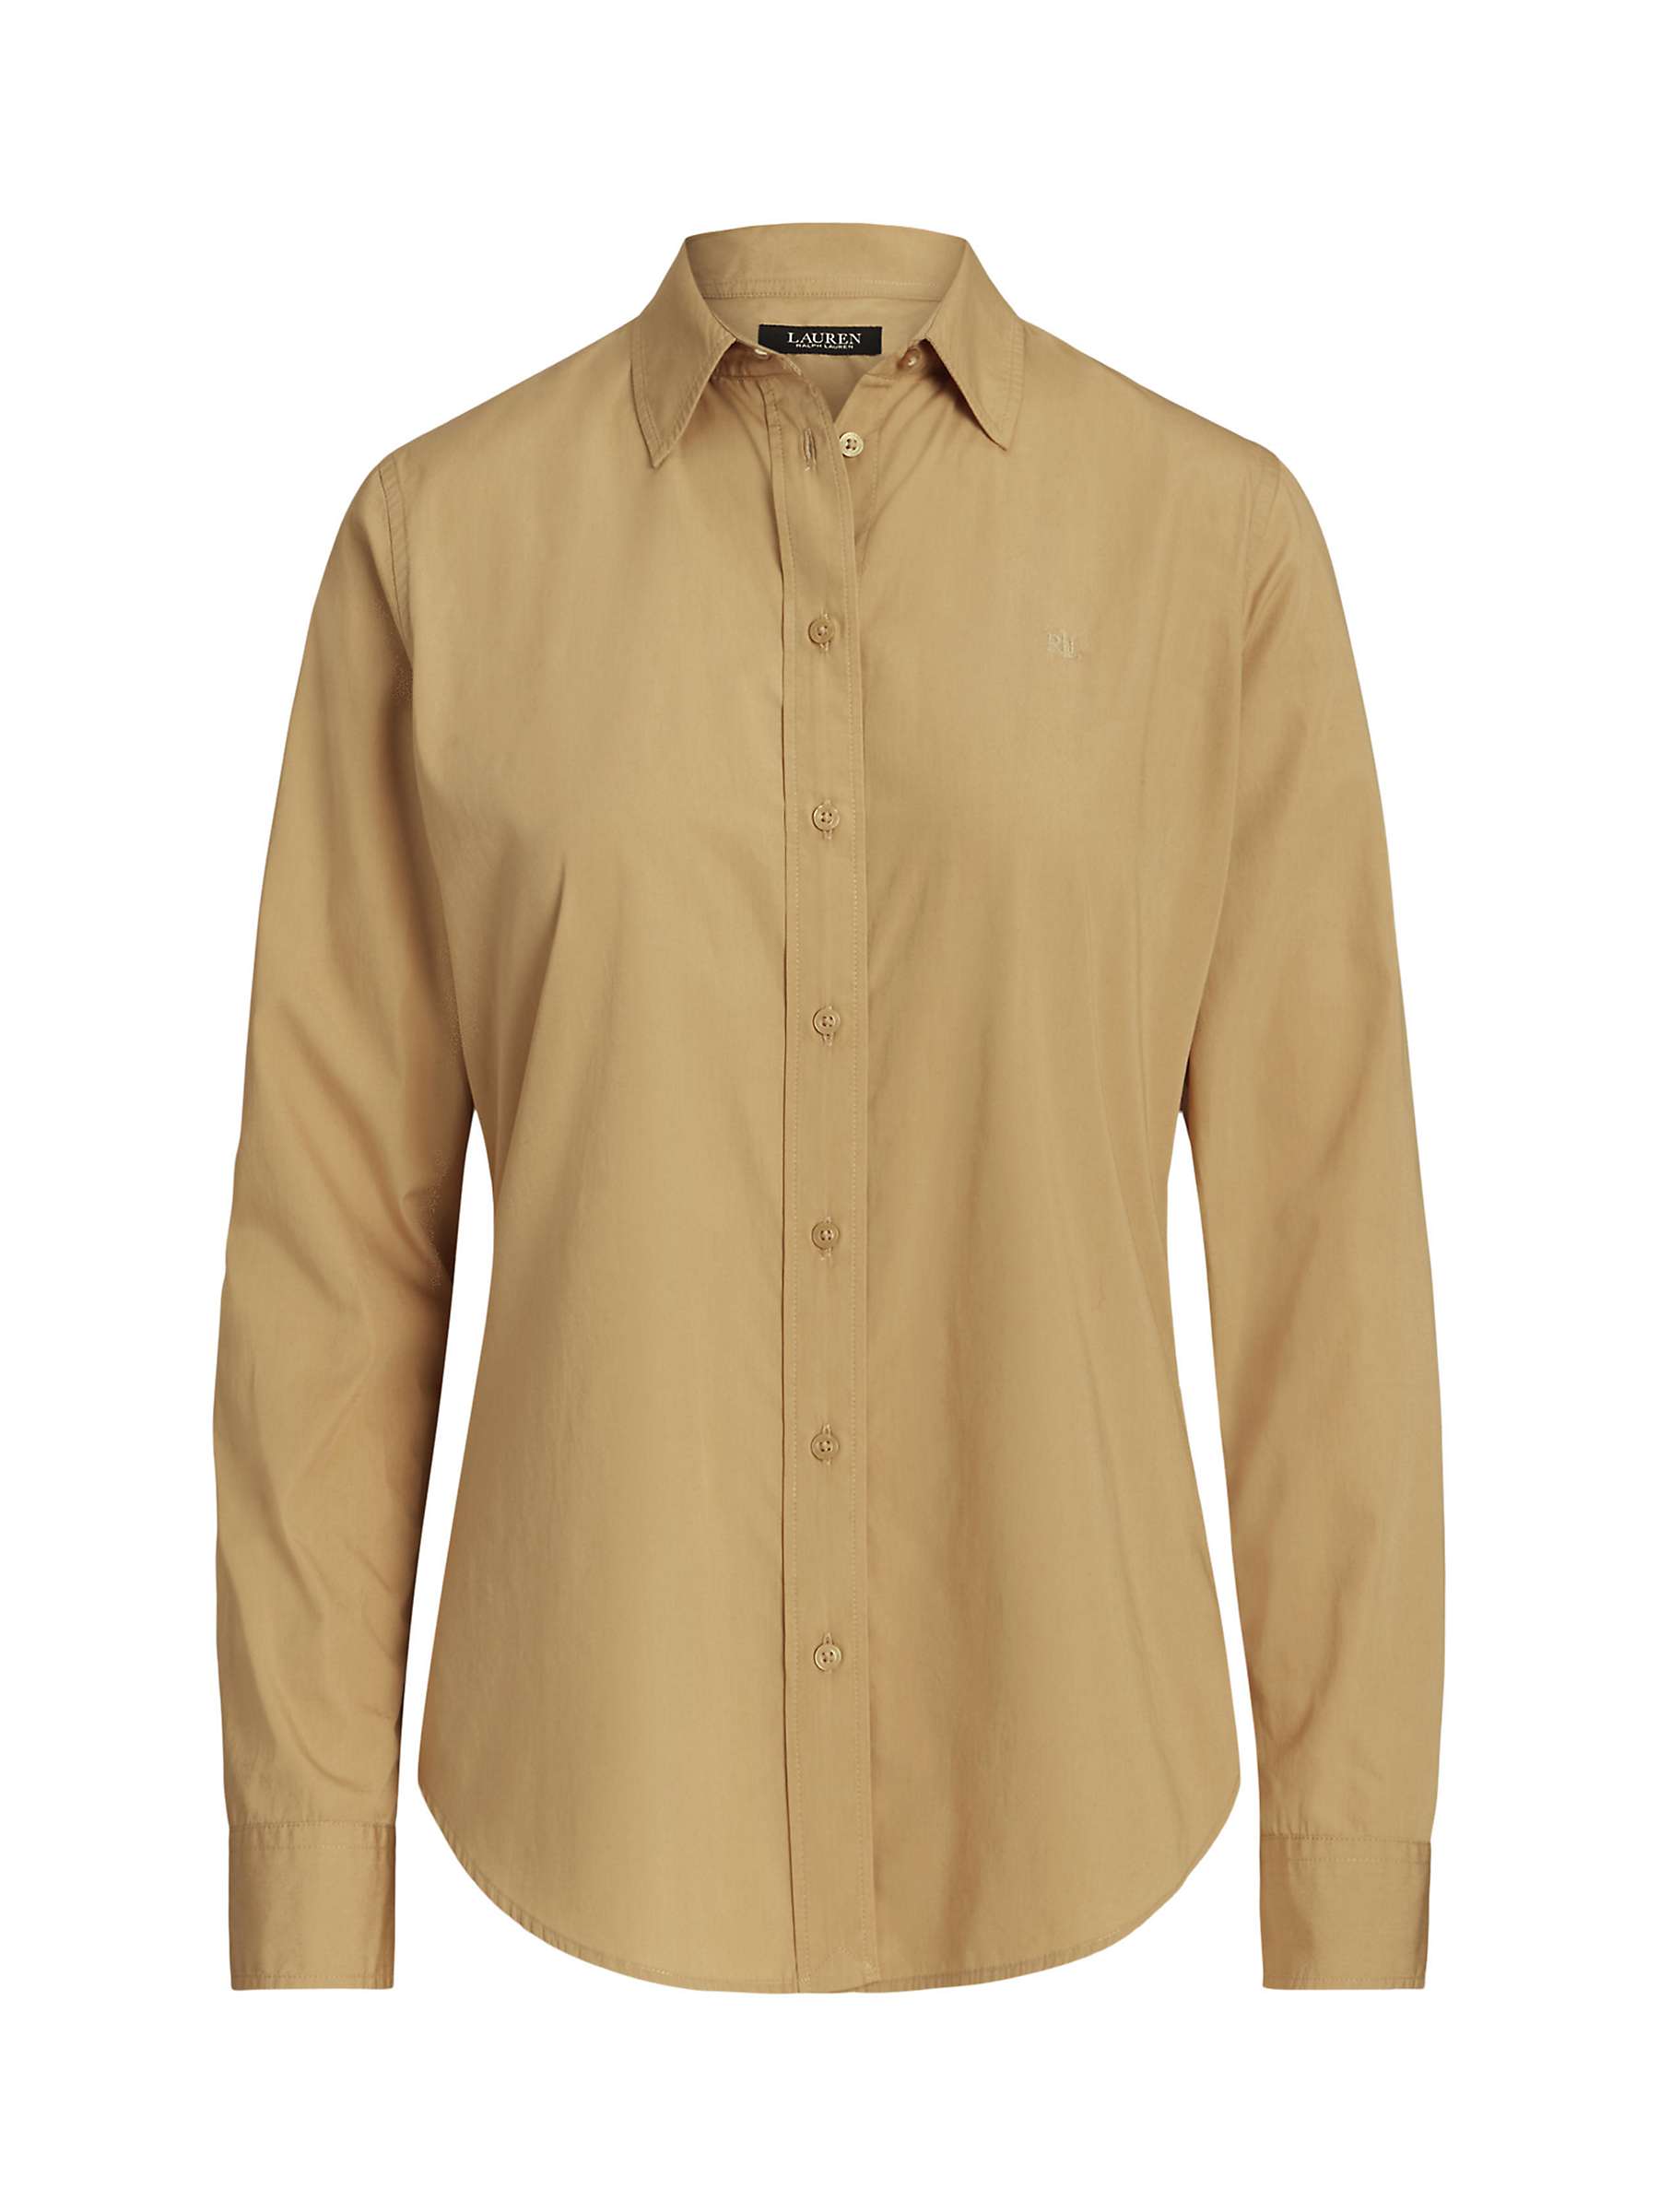 Buy Lauren Ralph Lauren Jamelko Cotton Shirt, Tan Online at johnlewis.com